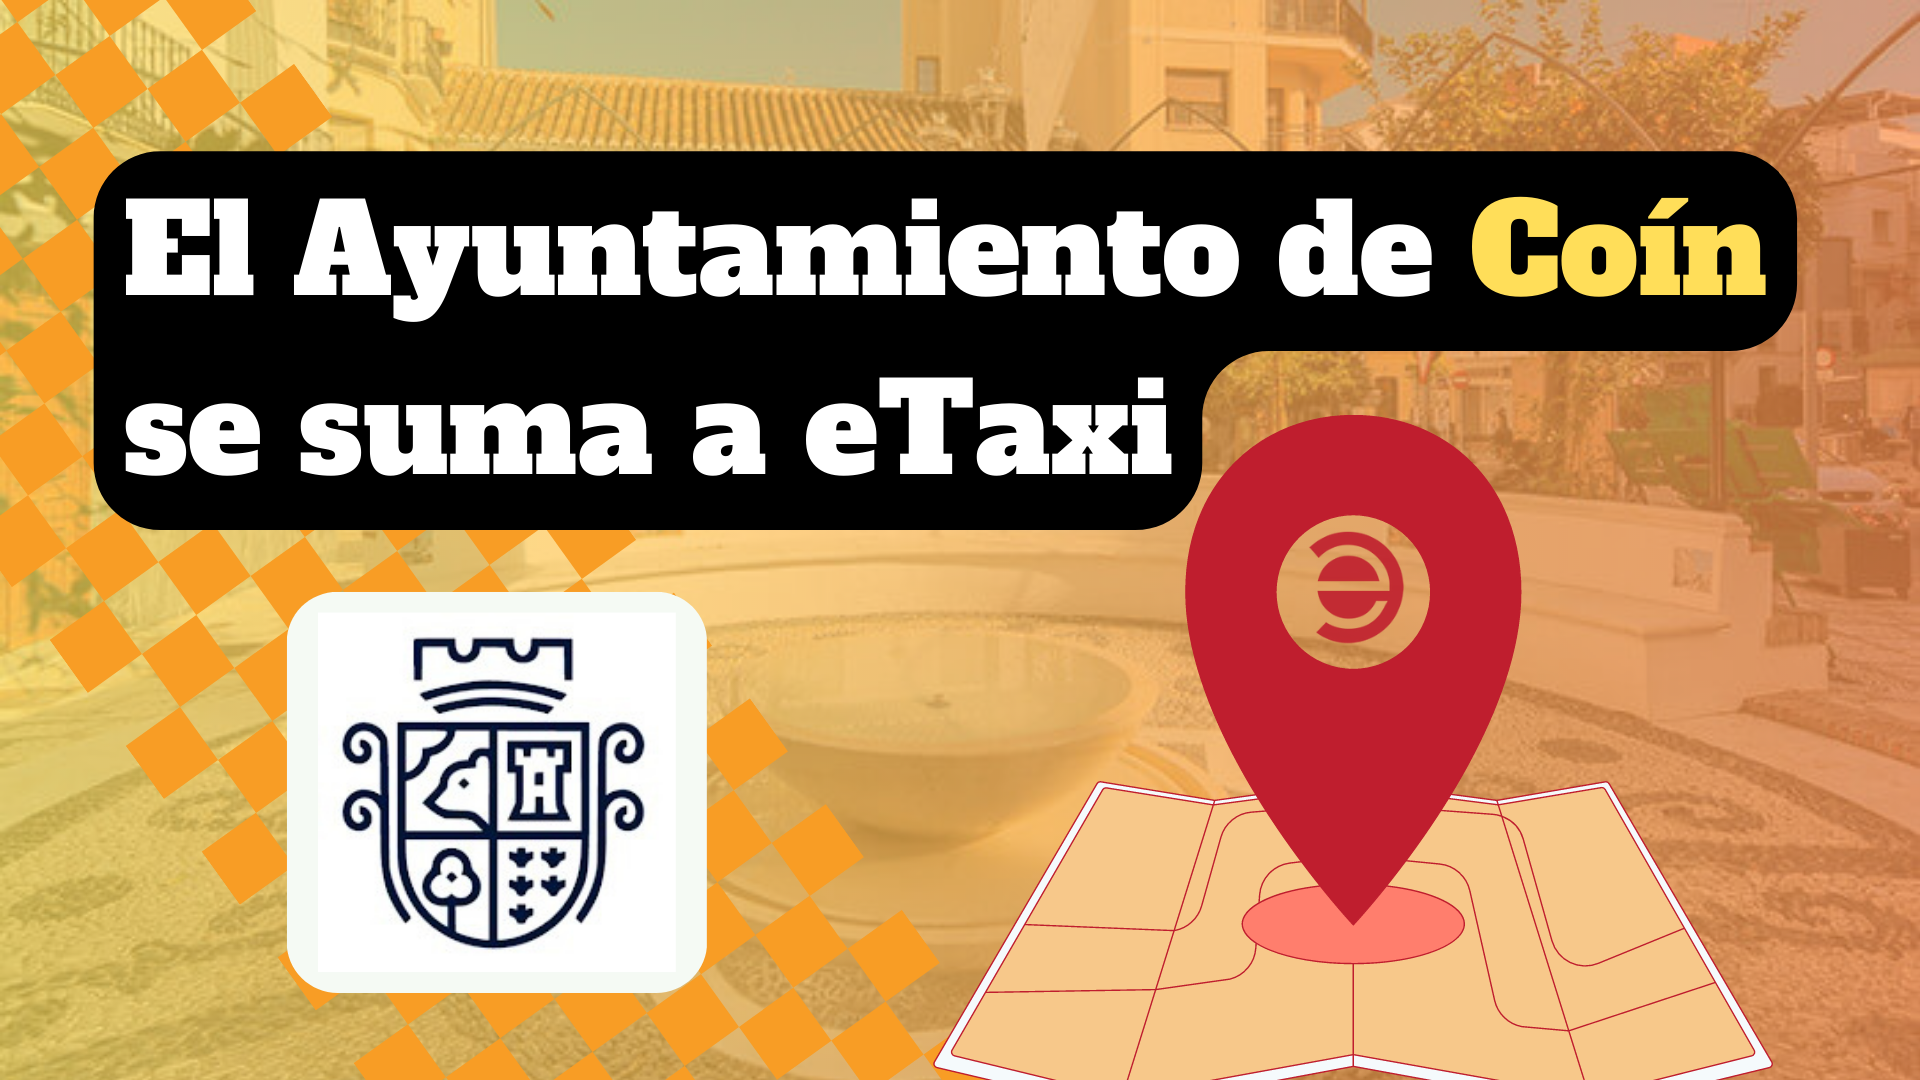 El ayuntamiento de Coín se suma a la revolución de la movilidad urbana con su servicio de eTaxi